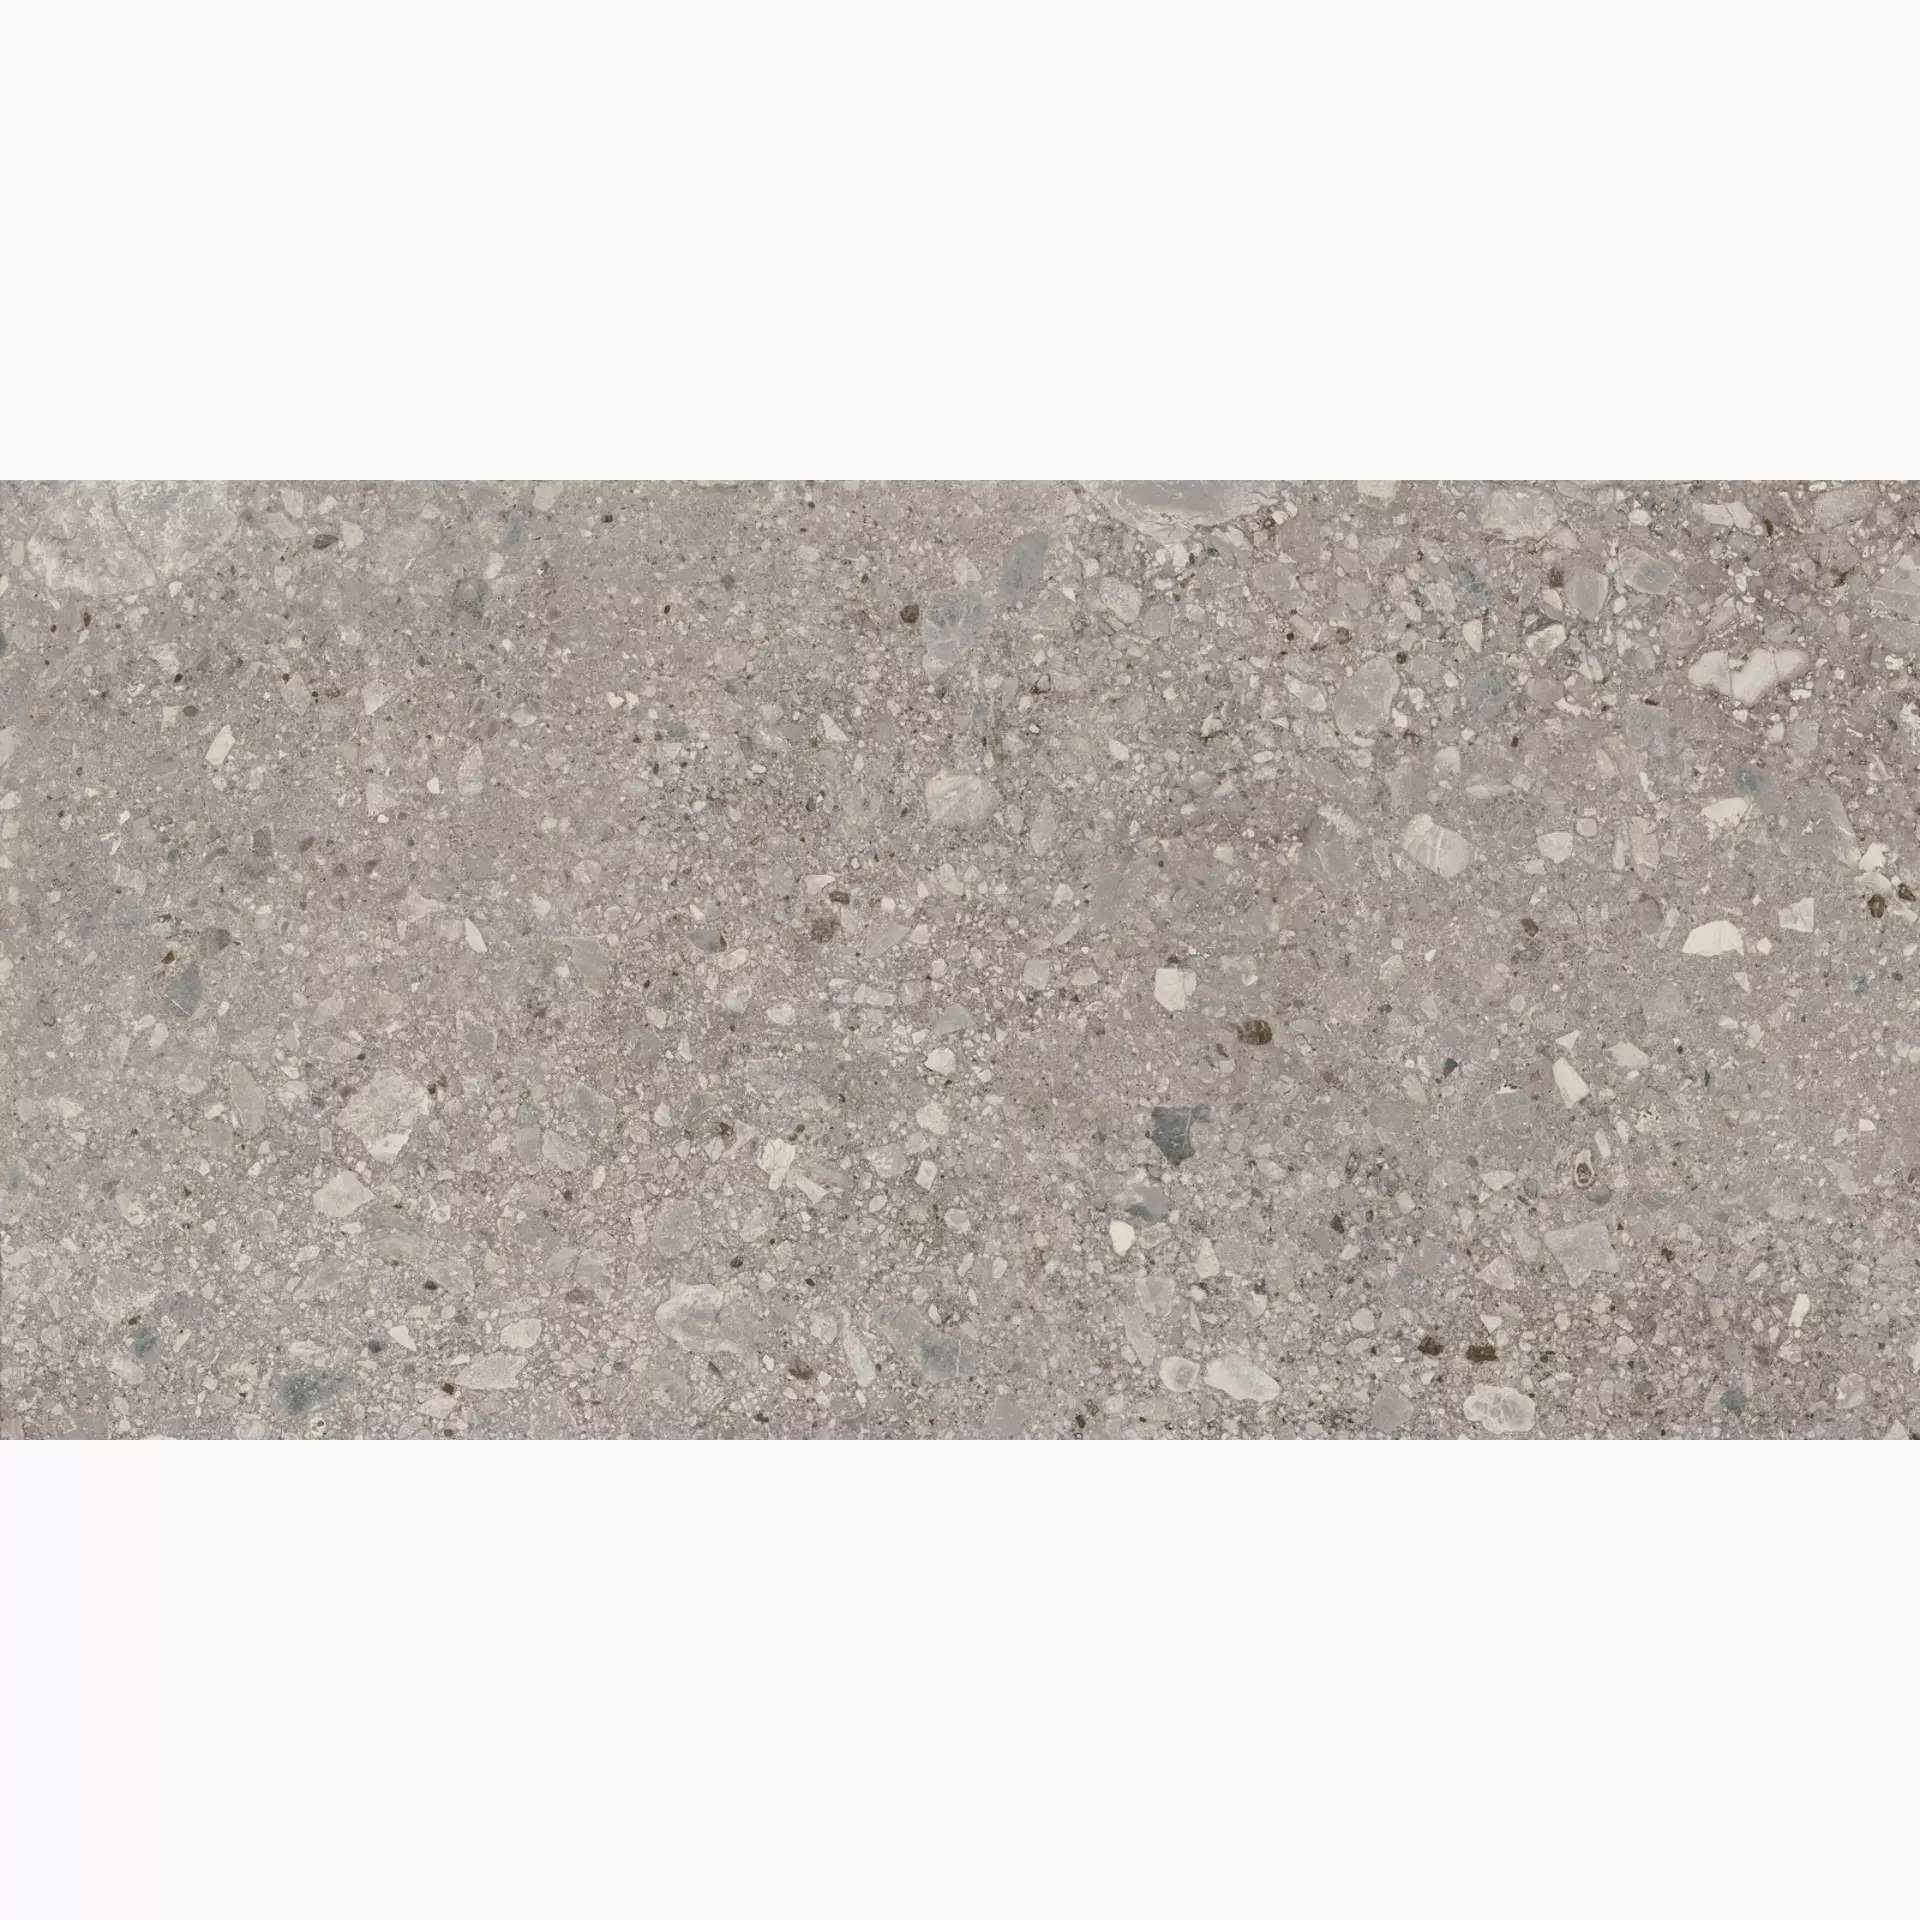 Marazzi Mystone Ceppo Di Gre Grey Naturale – Matt MQVT 75x150cm rectified 9,5mm